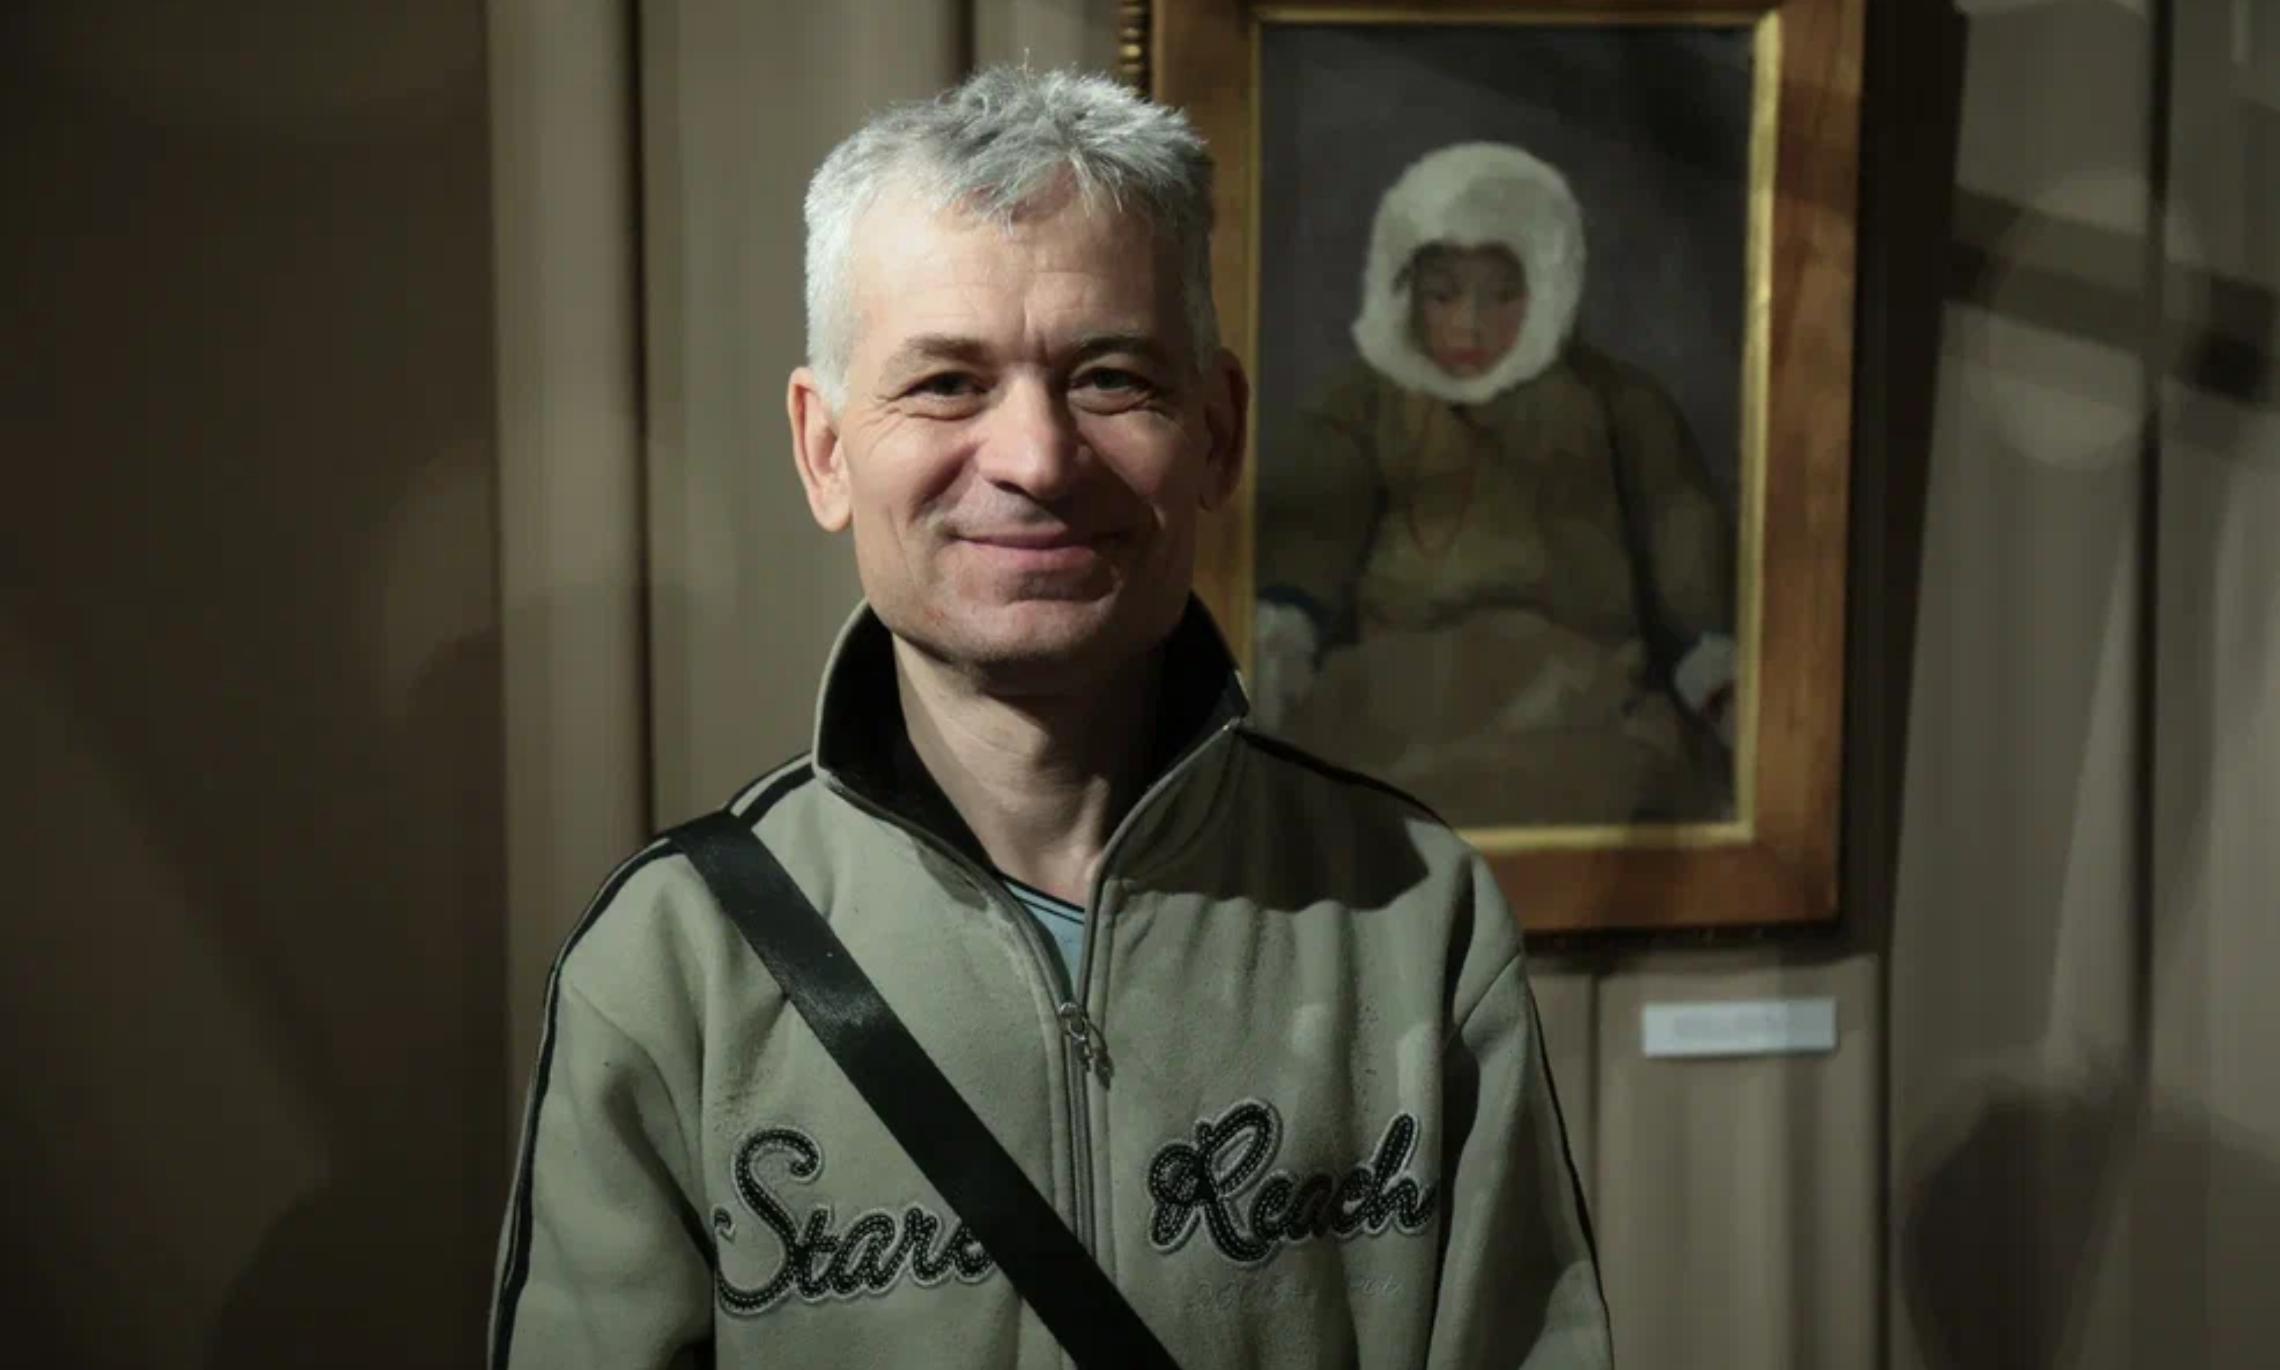 Владимир - житель Липецка, один из первых посетителей выставки